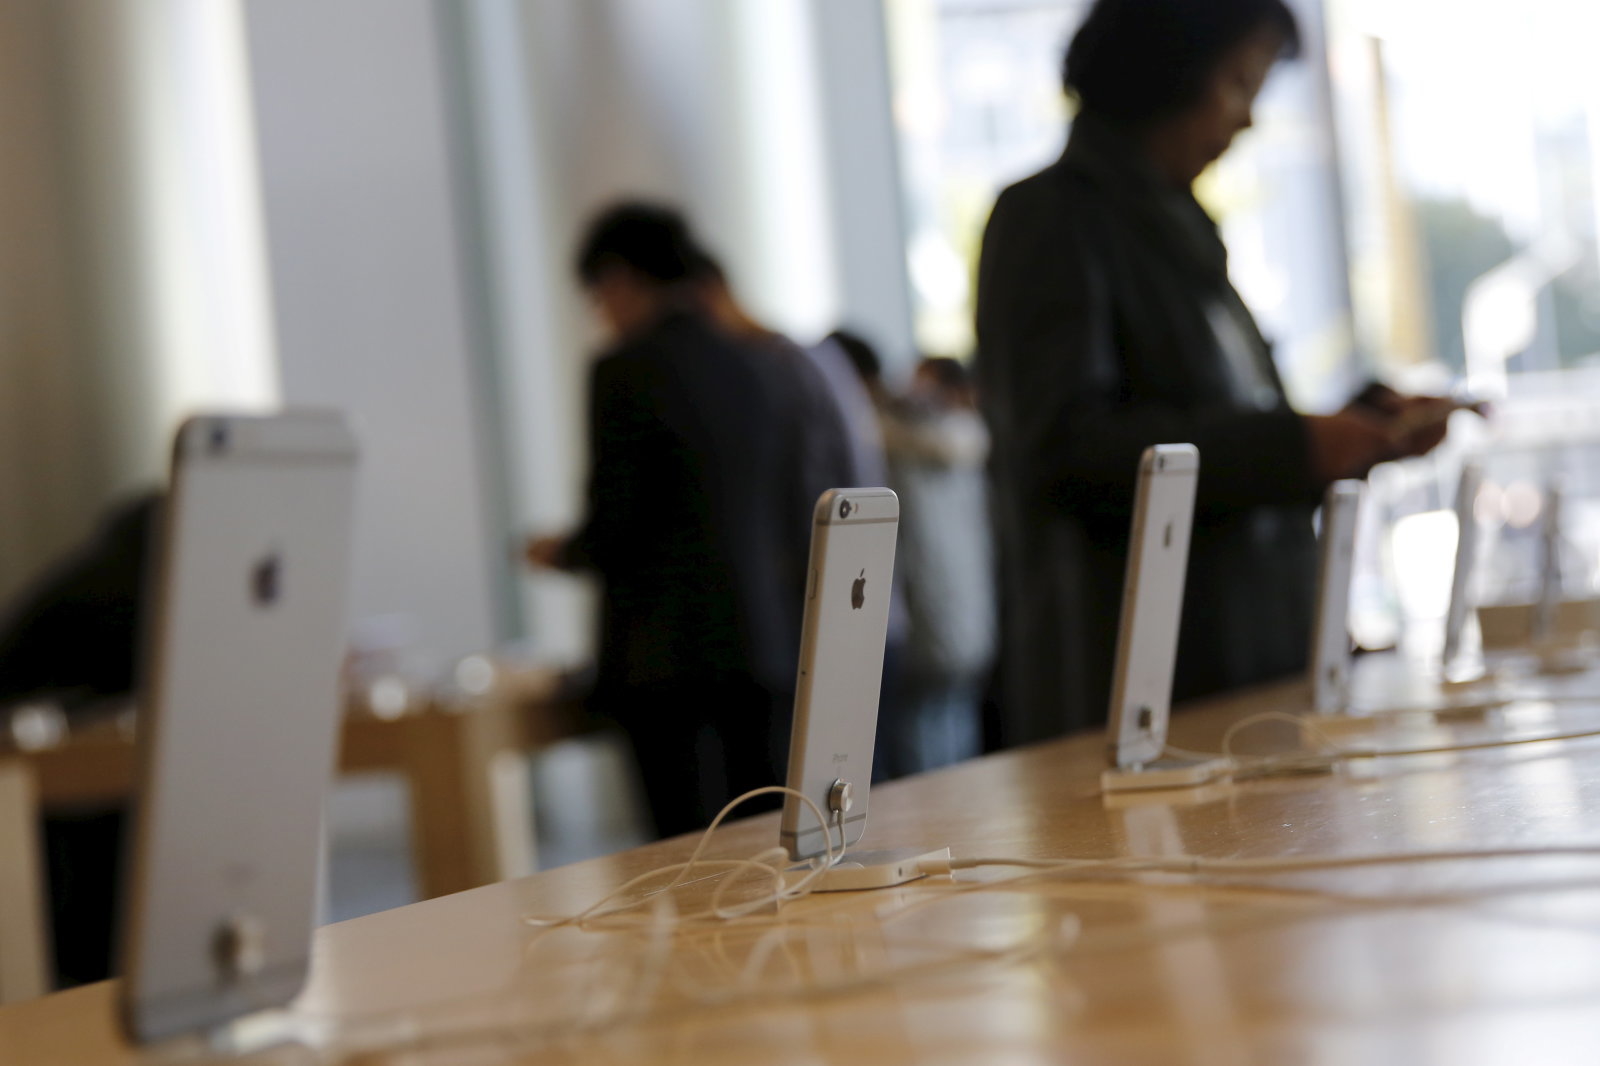 Китайский производитель смартфонов заявляет, что Apple скопировала дизайн его устройств